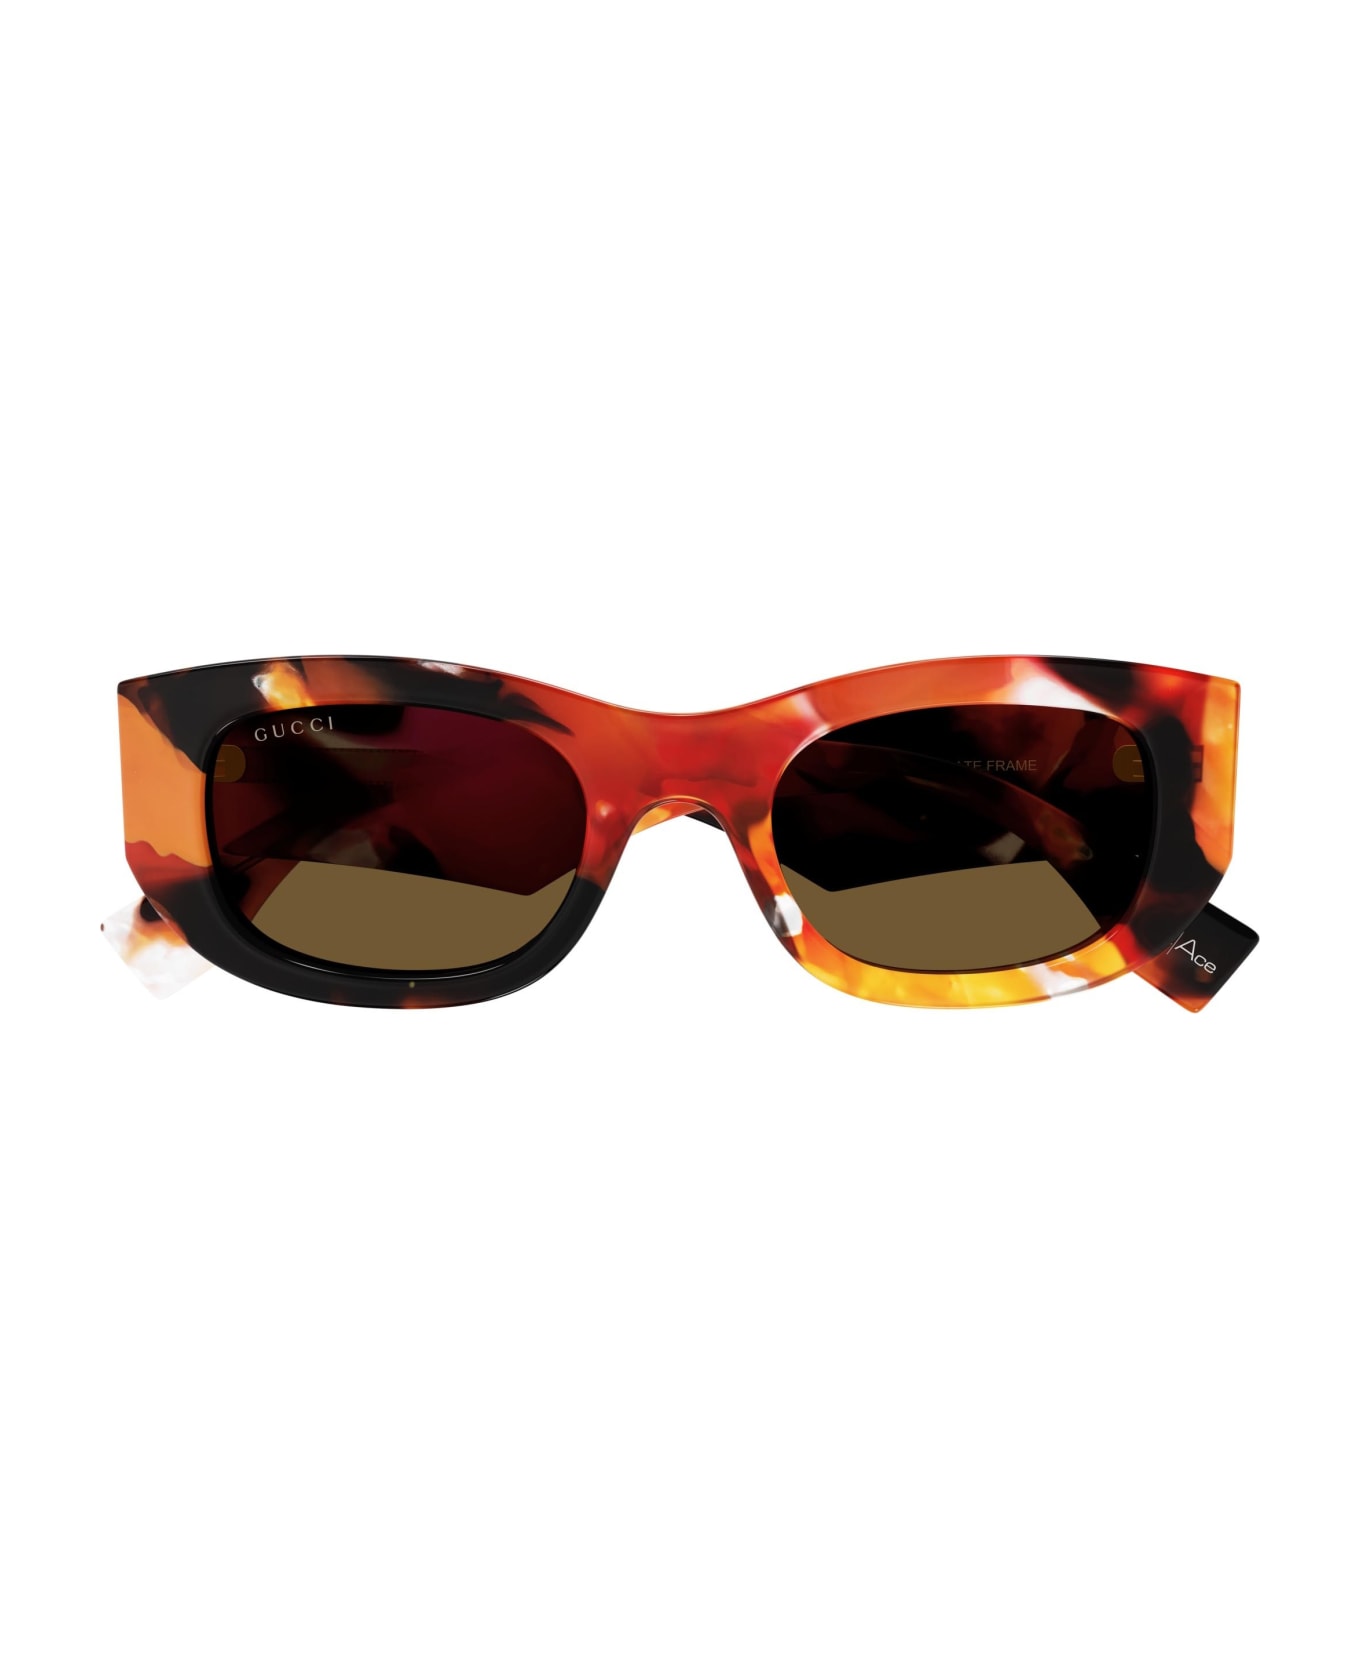 Gucci Eyewear Sunglasses - Arancione/Marrone